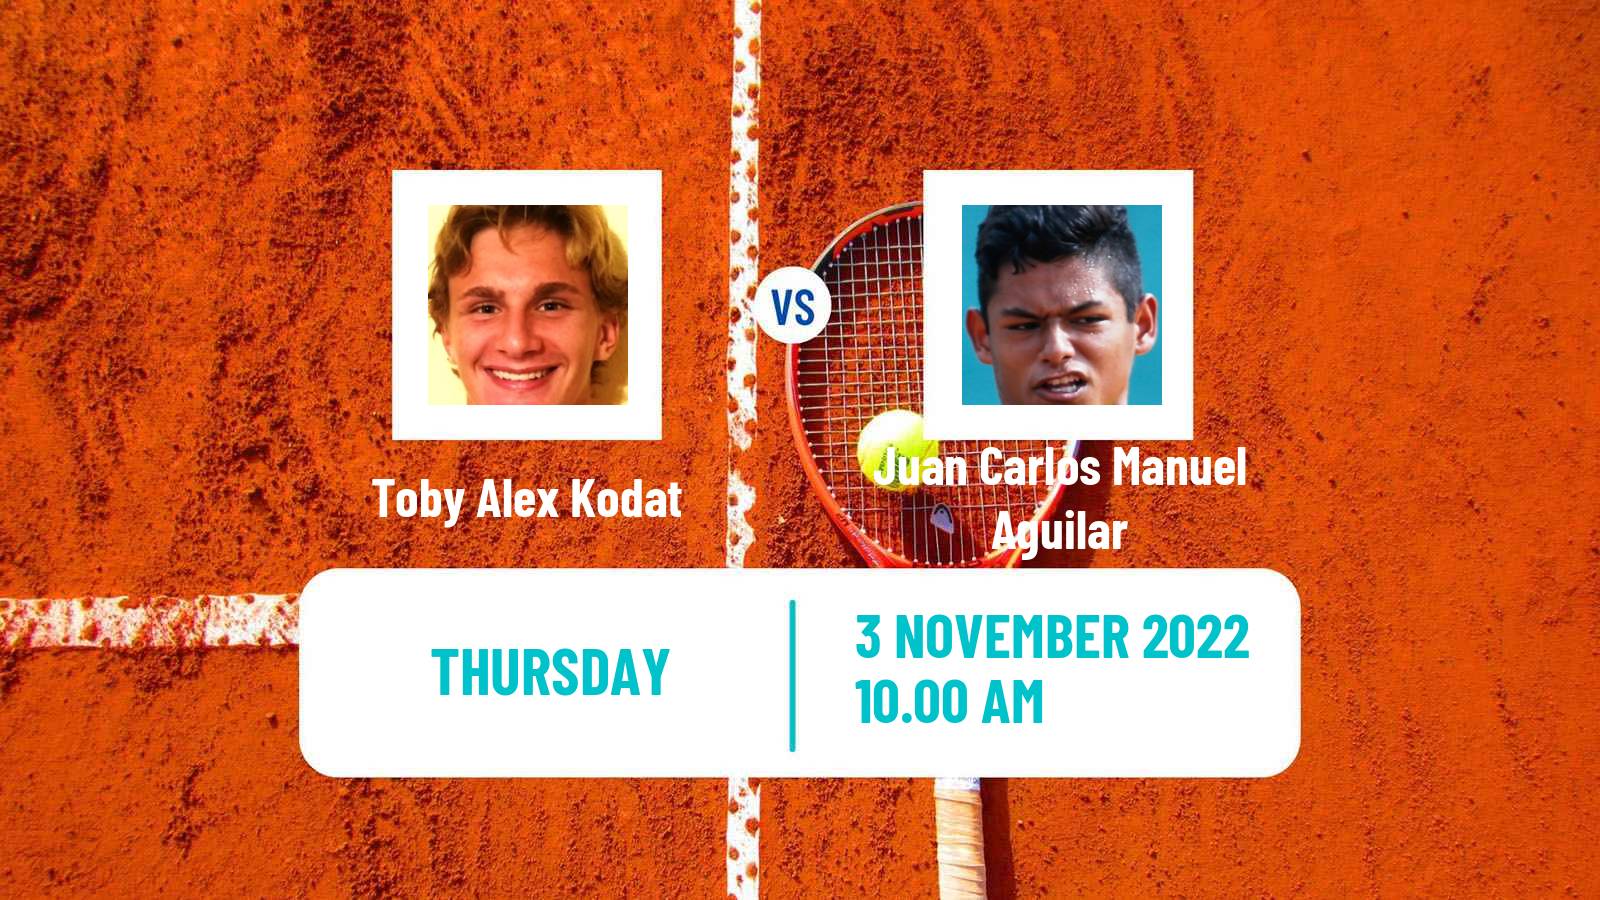 Tennis ITF Tournaments Toby Alex Kodat - Juan Carlos Manuel Aguilar